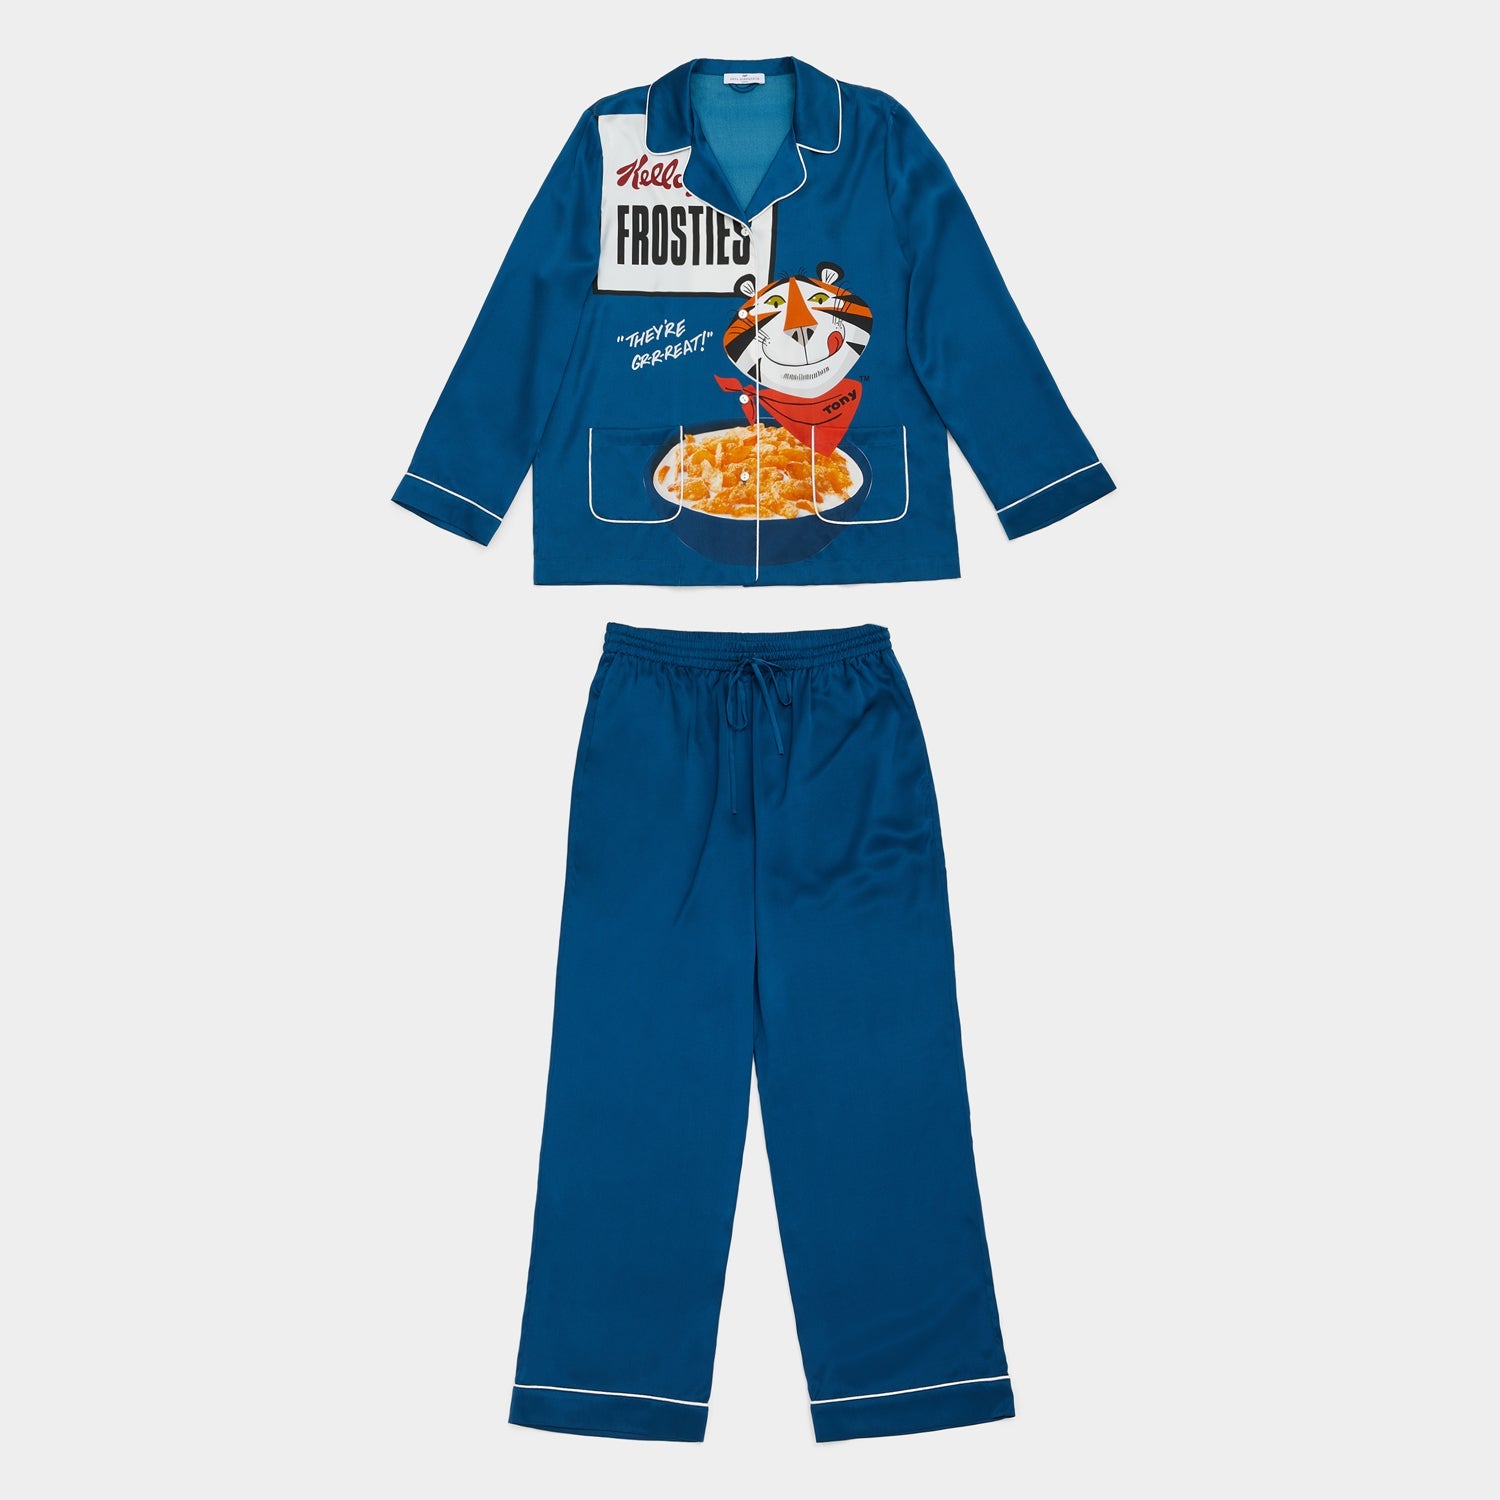 Anya Brands Frosties Pyjamas -

                  
                    Silk in Petrol Blue -
                  

                  Anya Hindmarch US
